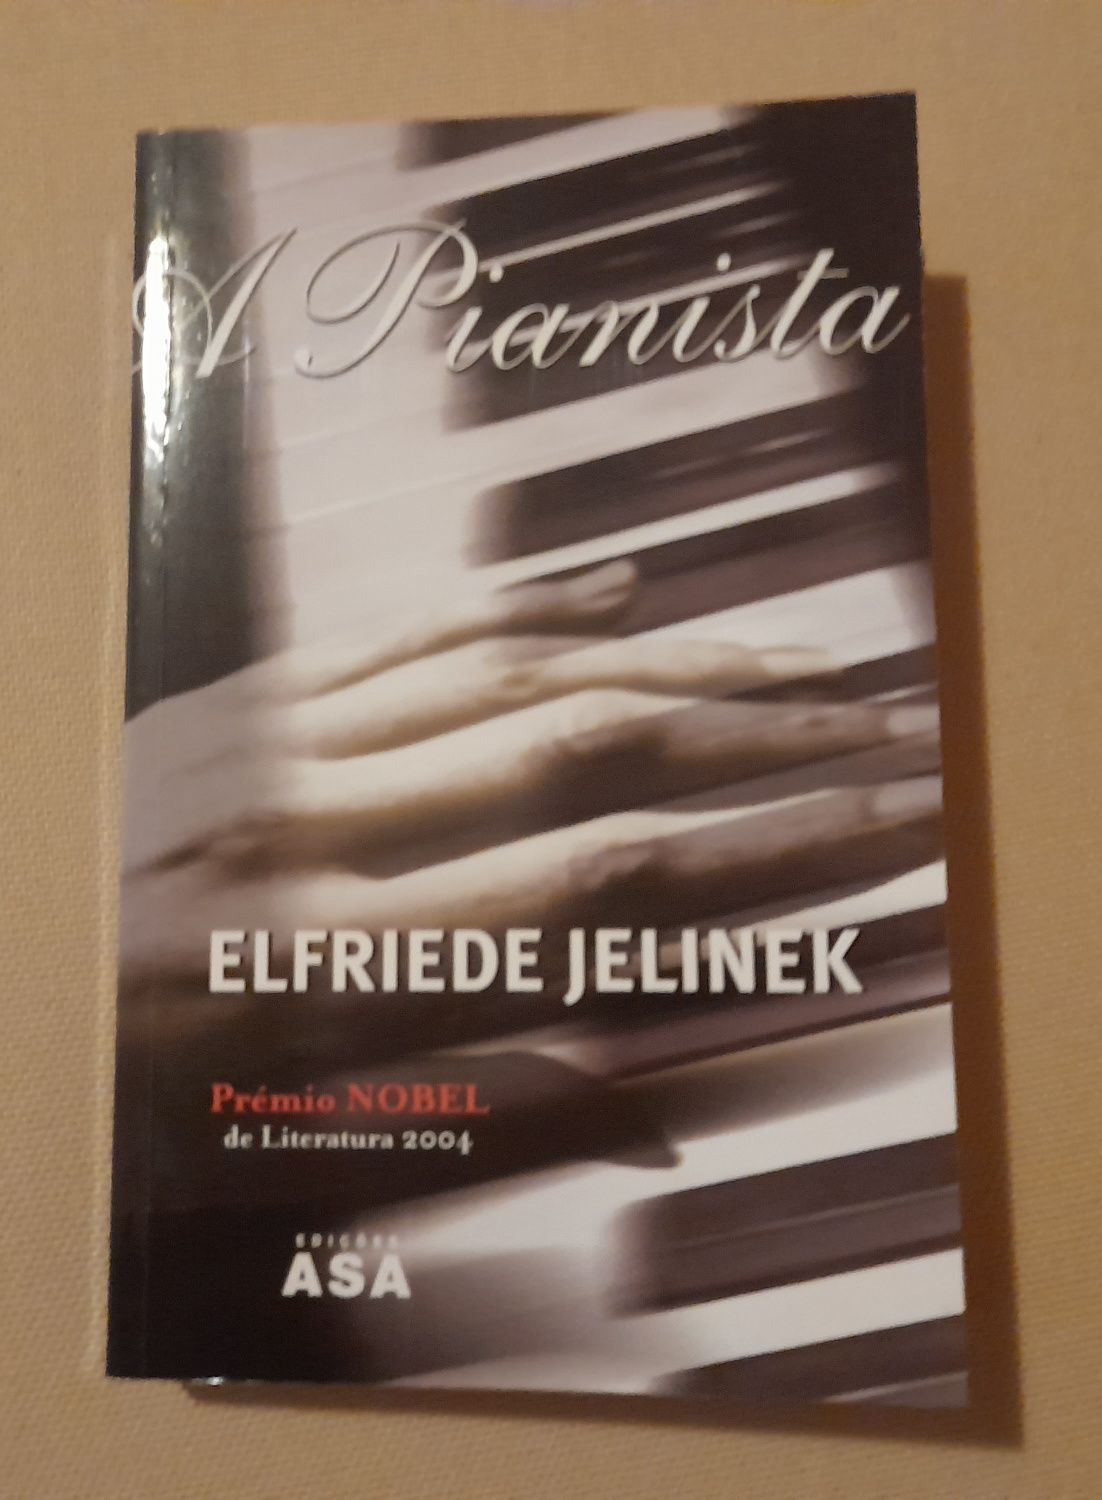 "A pianista" Elfriede Jelinek